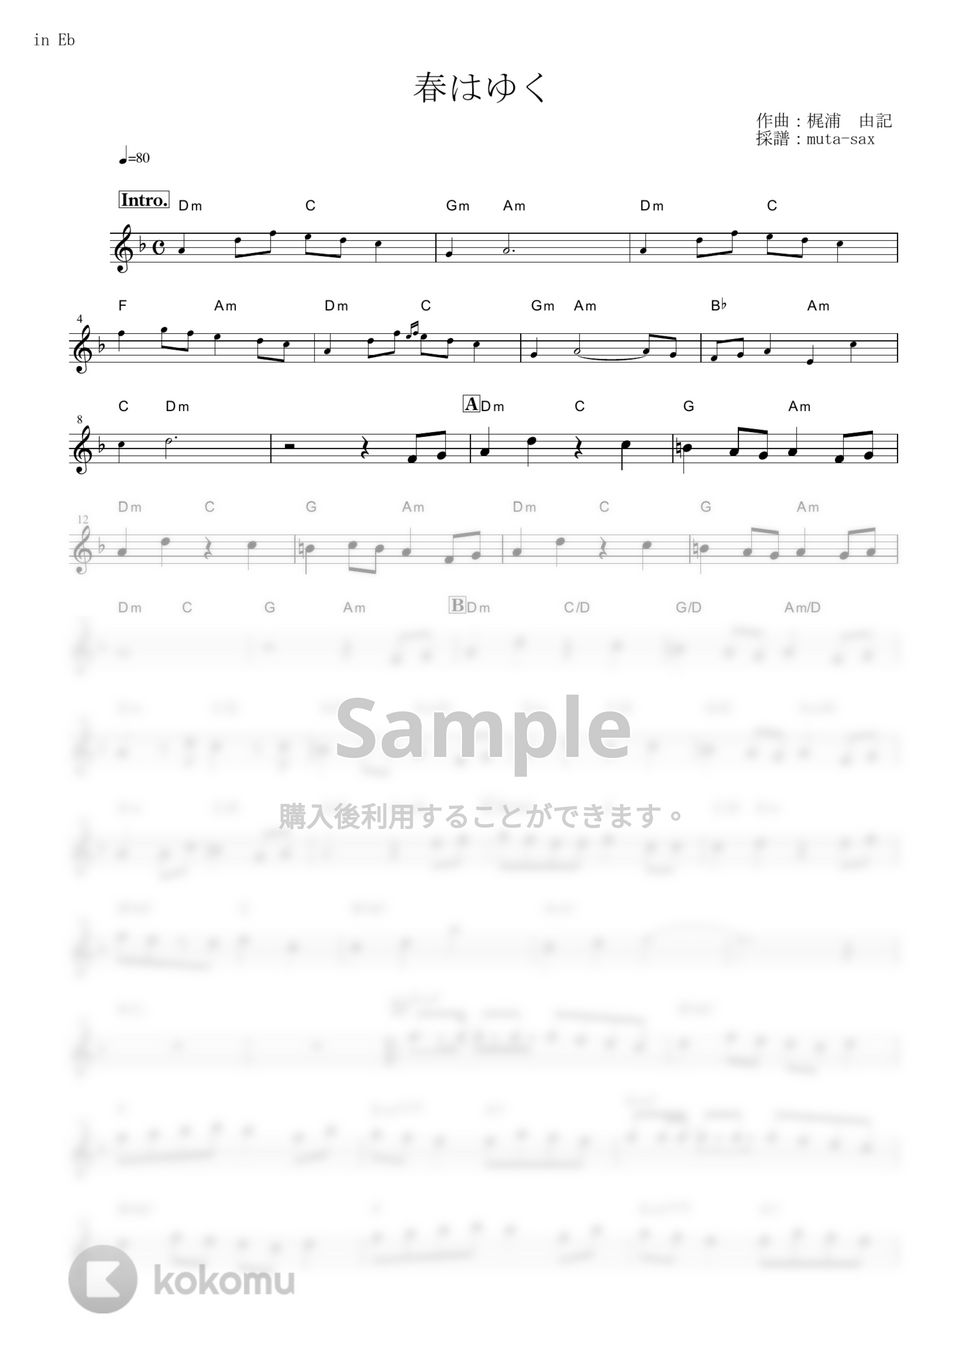 劇場版「Fate/stay night [Heaven's Feel]」III.spring song - 春はゆく【in Eb】 by muta-sax